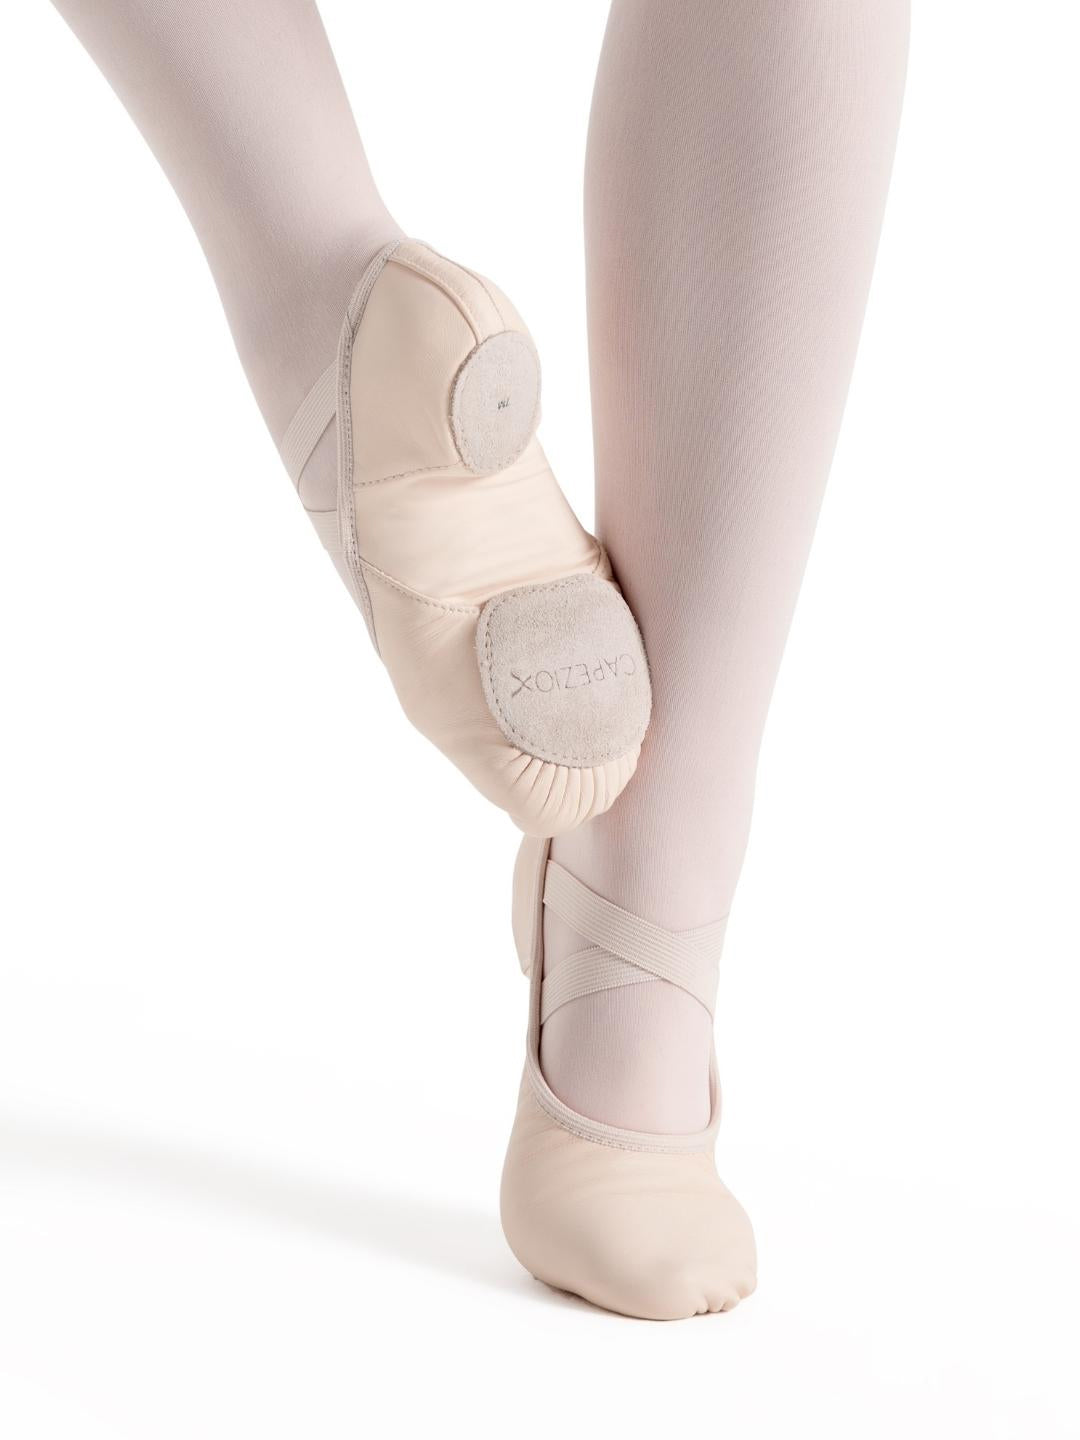 Hanami Leather Ballet Shoe - Child Light Pink